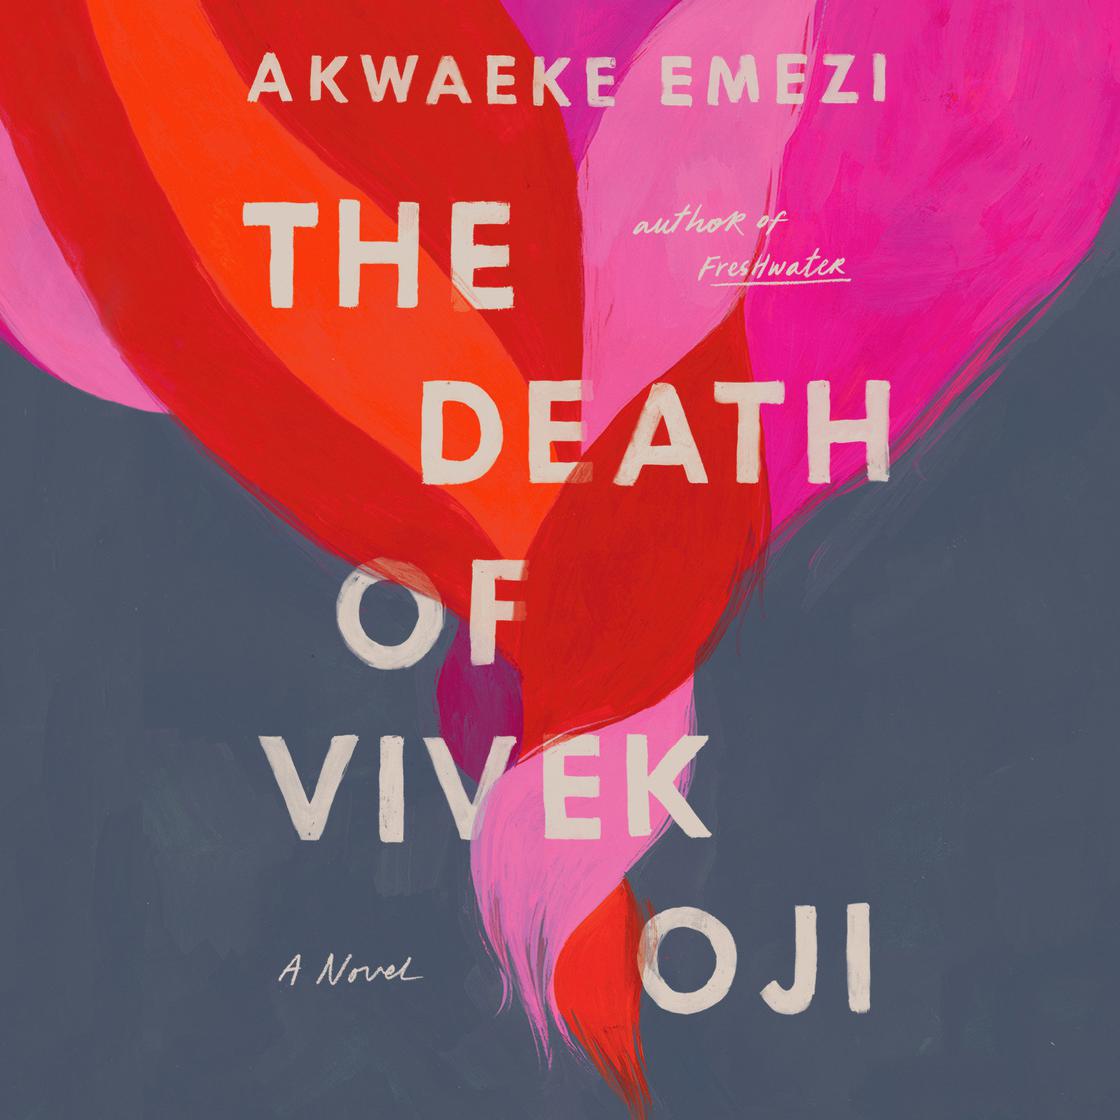 Akwaeke Emezi: The Death of Vivek Oji (AudiobookFormat, 2020, Penguin Random House Audio Publishing Group)